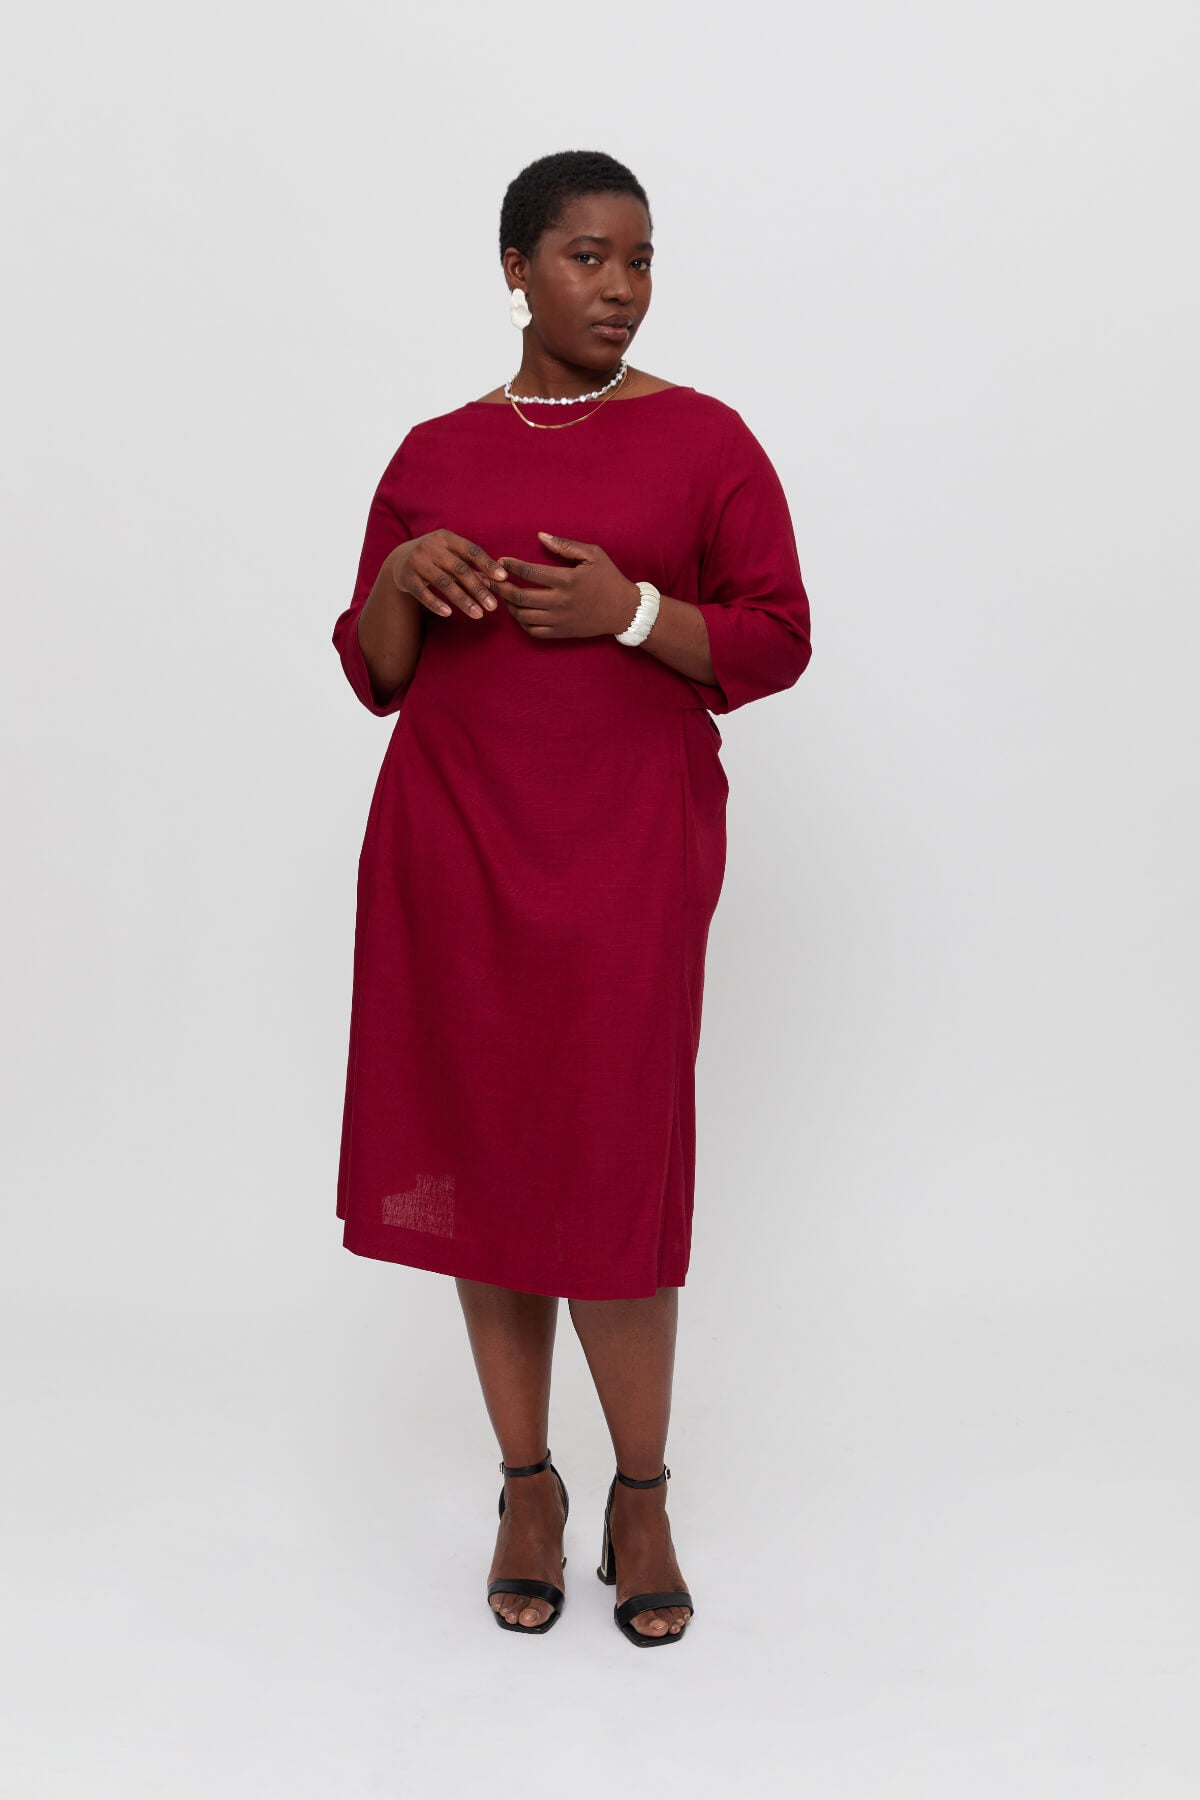 Rotes A Linie Kleid EMILIA · Maxi Kleid Langarm · Festliches und Elegantes Kleid mit Taschen - AYANI